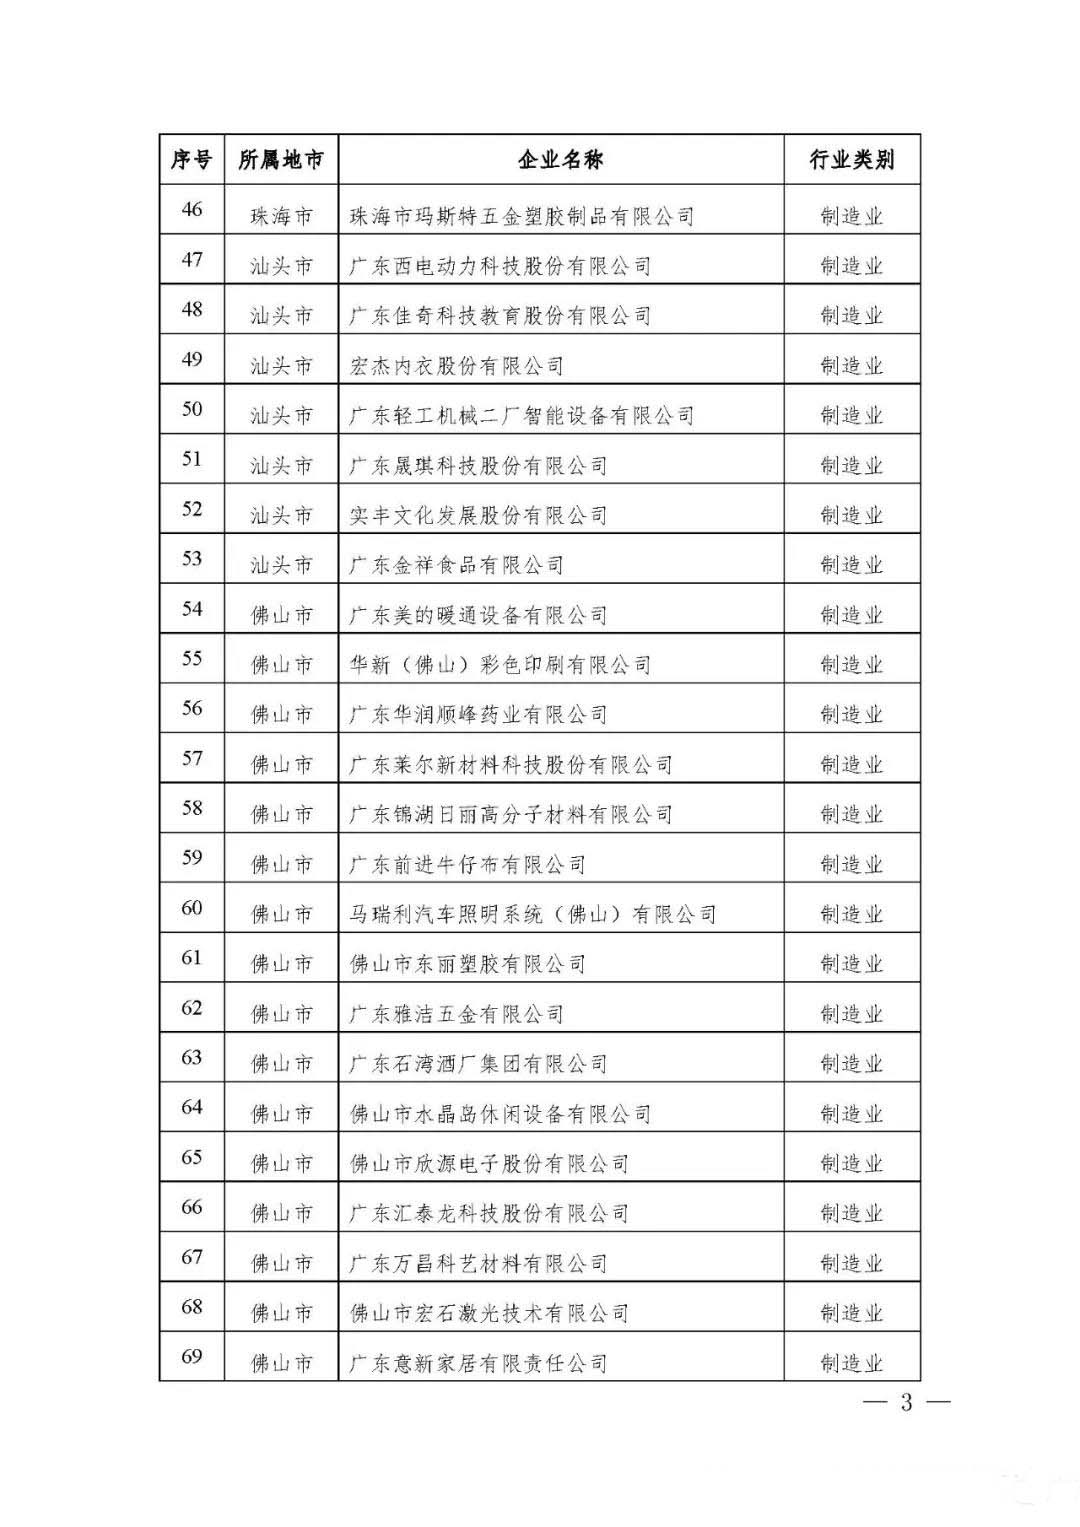 【公示】广东省工信厅等四部门关于认定第十八批广东省省级企业技术中心的通知